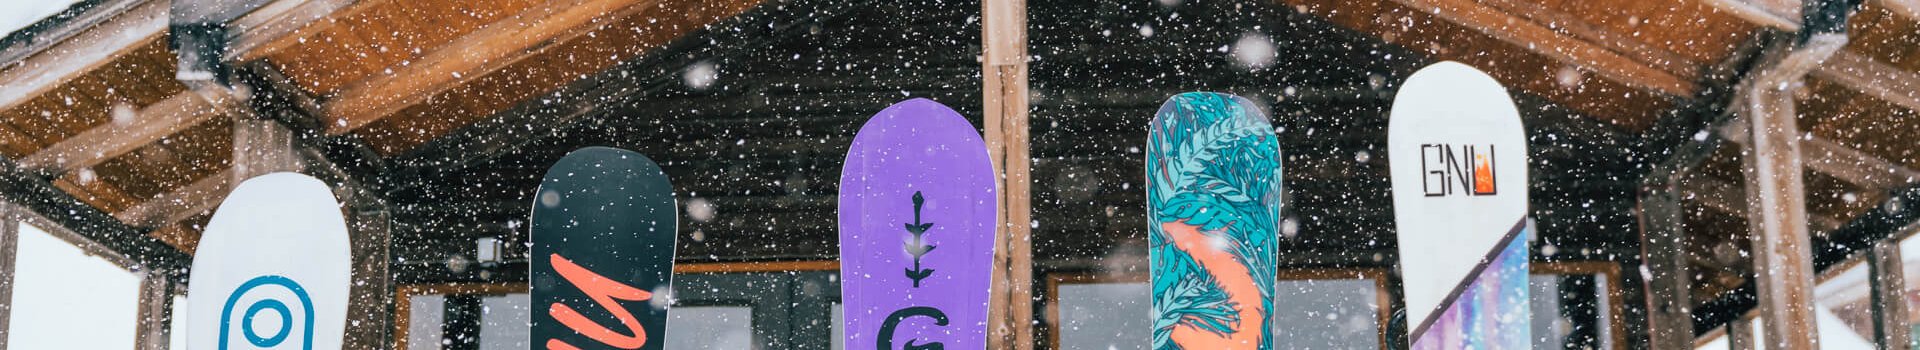 Nasze ulubione deski snowboardowe: GNU, LIBTECH, ROXY 2019, co nowego?